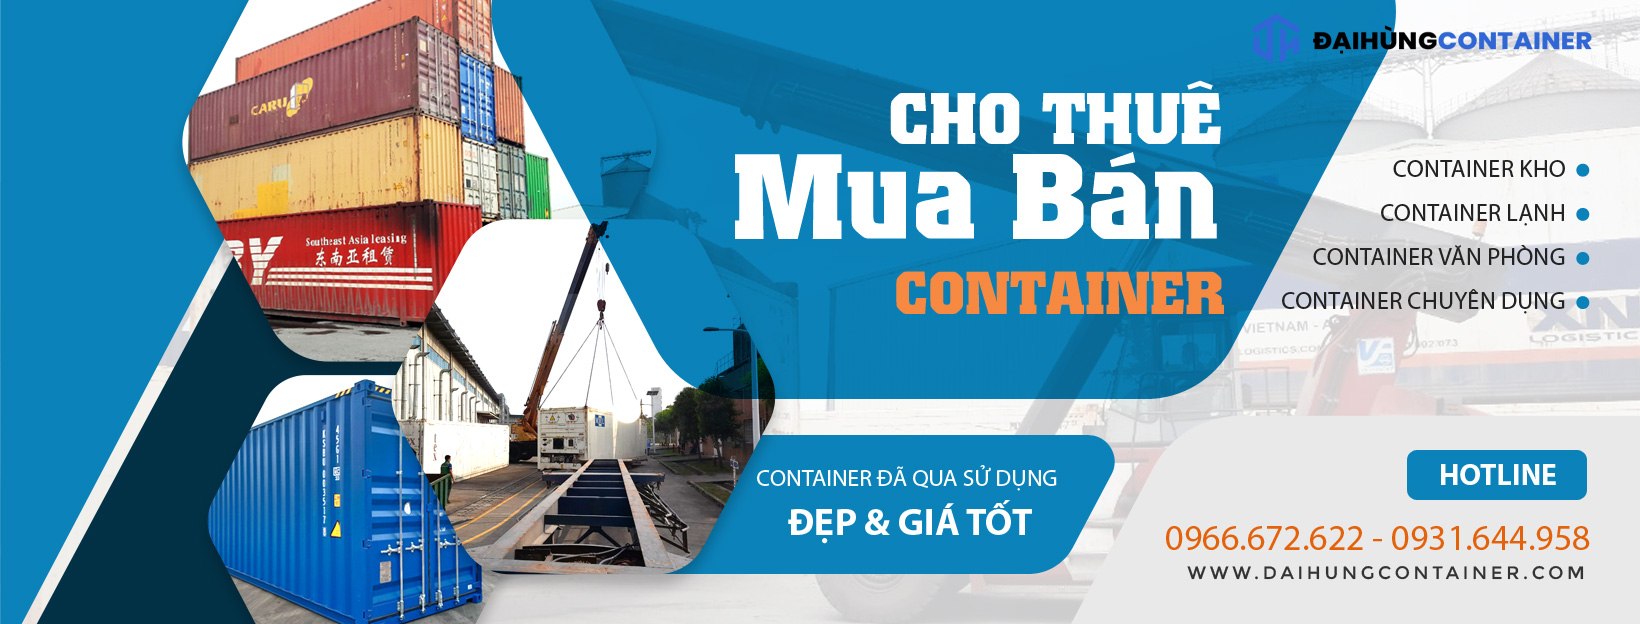 Đại Hùng Container chuyên mua bán, cho thuê container cũ UY TÍN miền Bắc